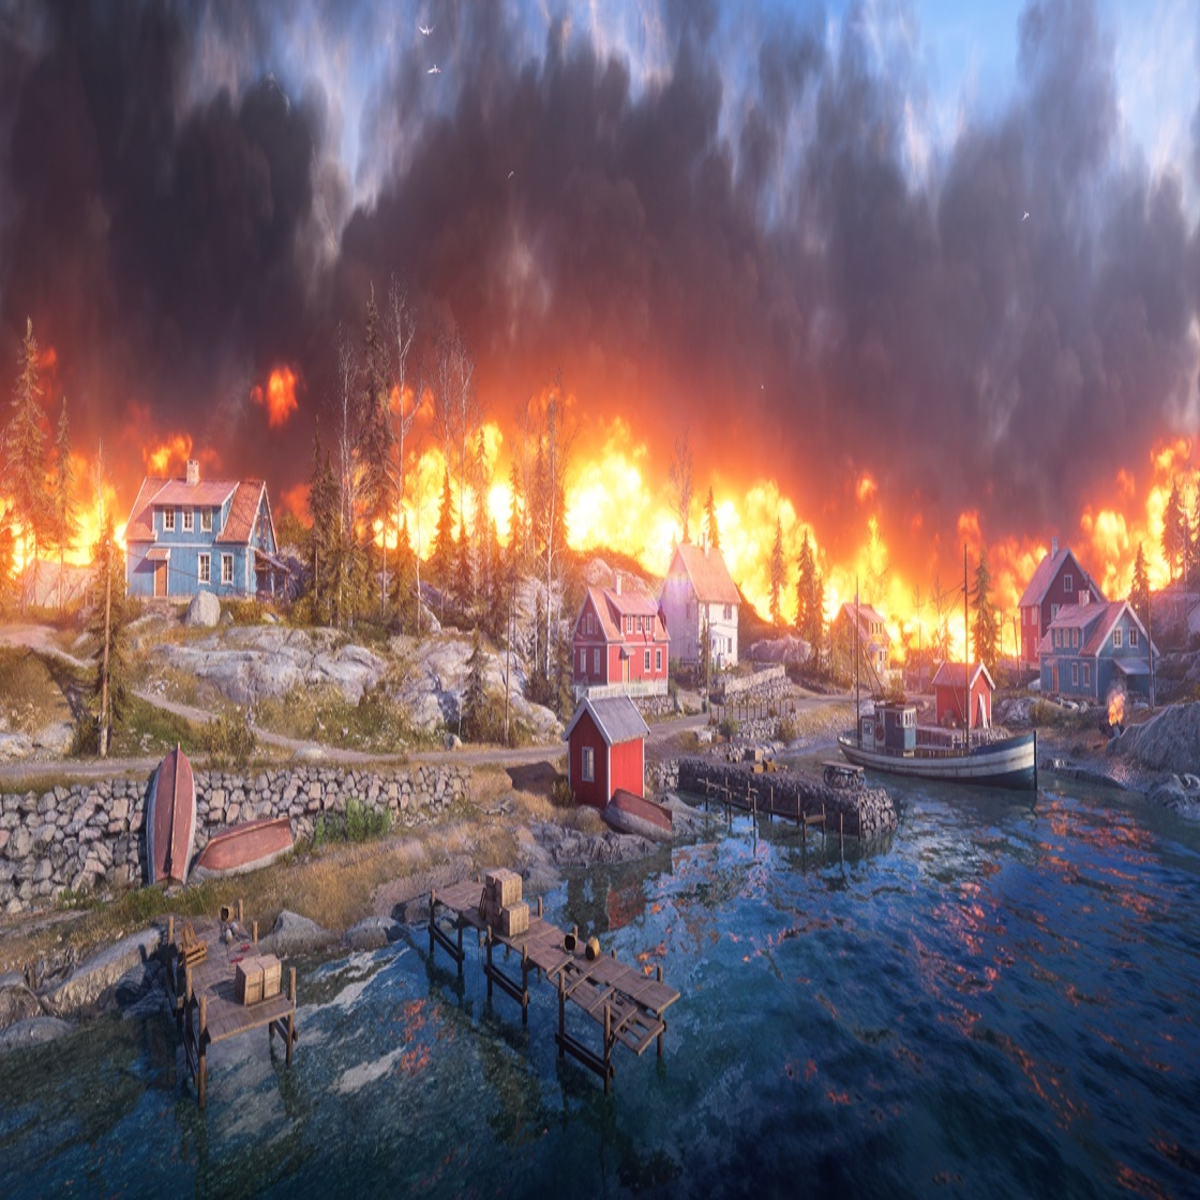 Battlefield V's Battle Royale Mode, Firestorm, Further Detailed